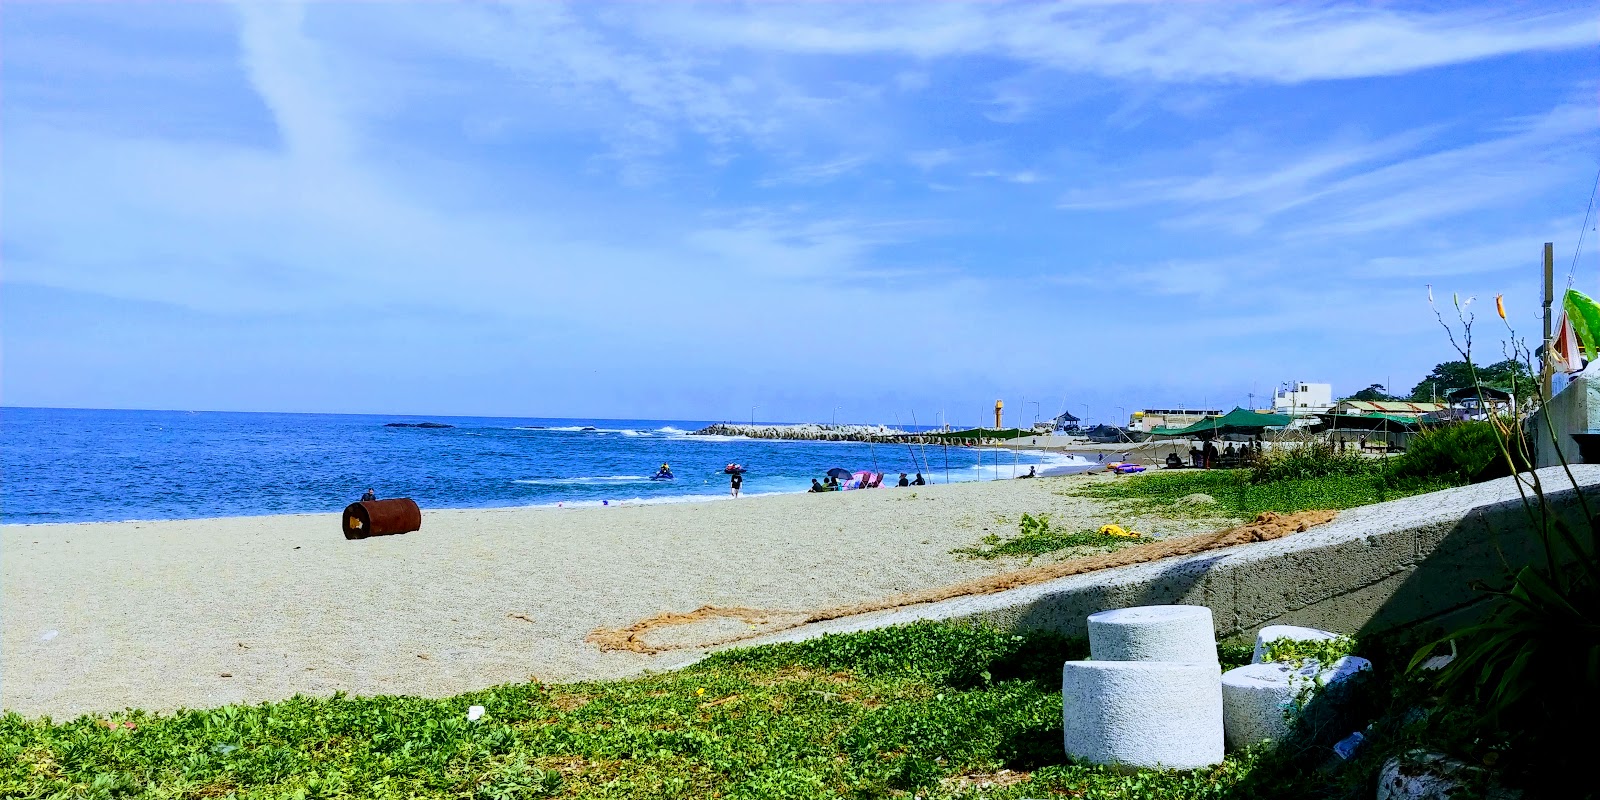 Foto af Shinchanggan Beach - populært sted blandt afslapningskendere